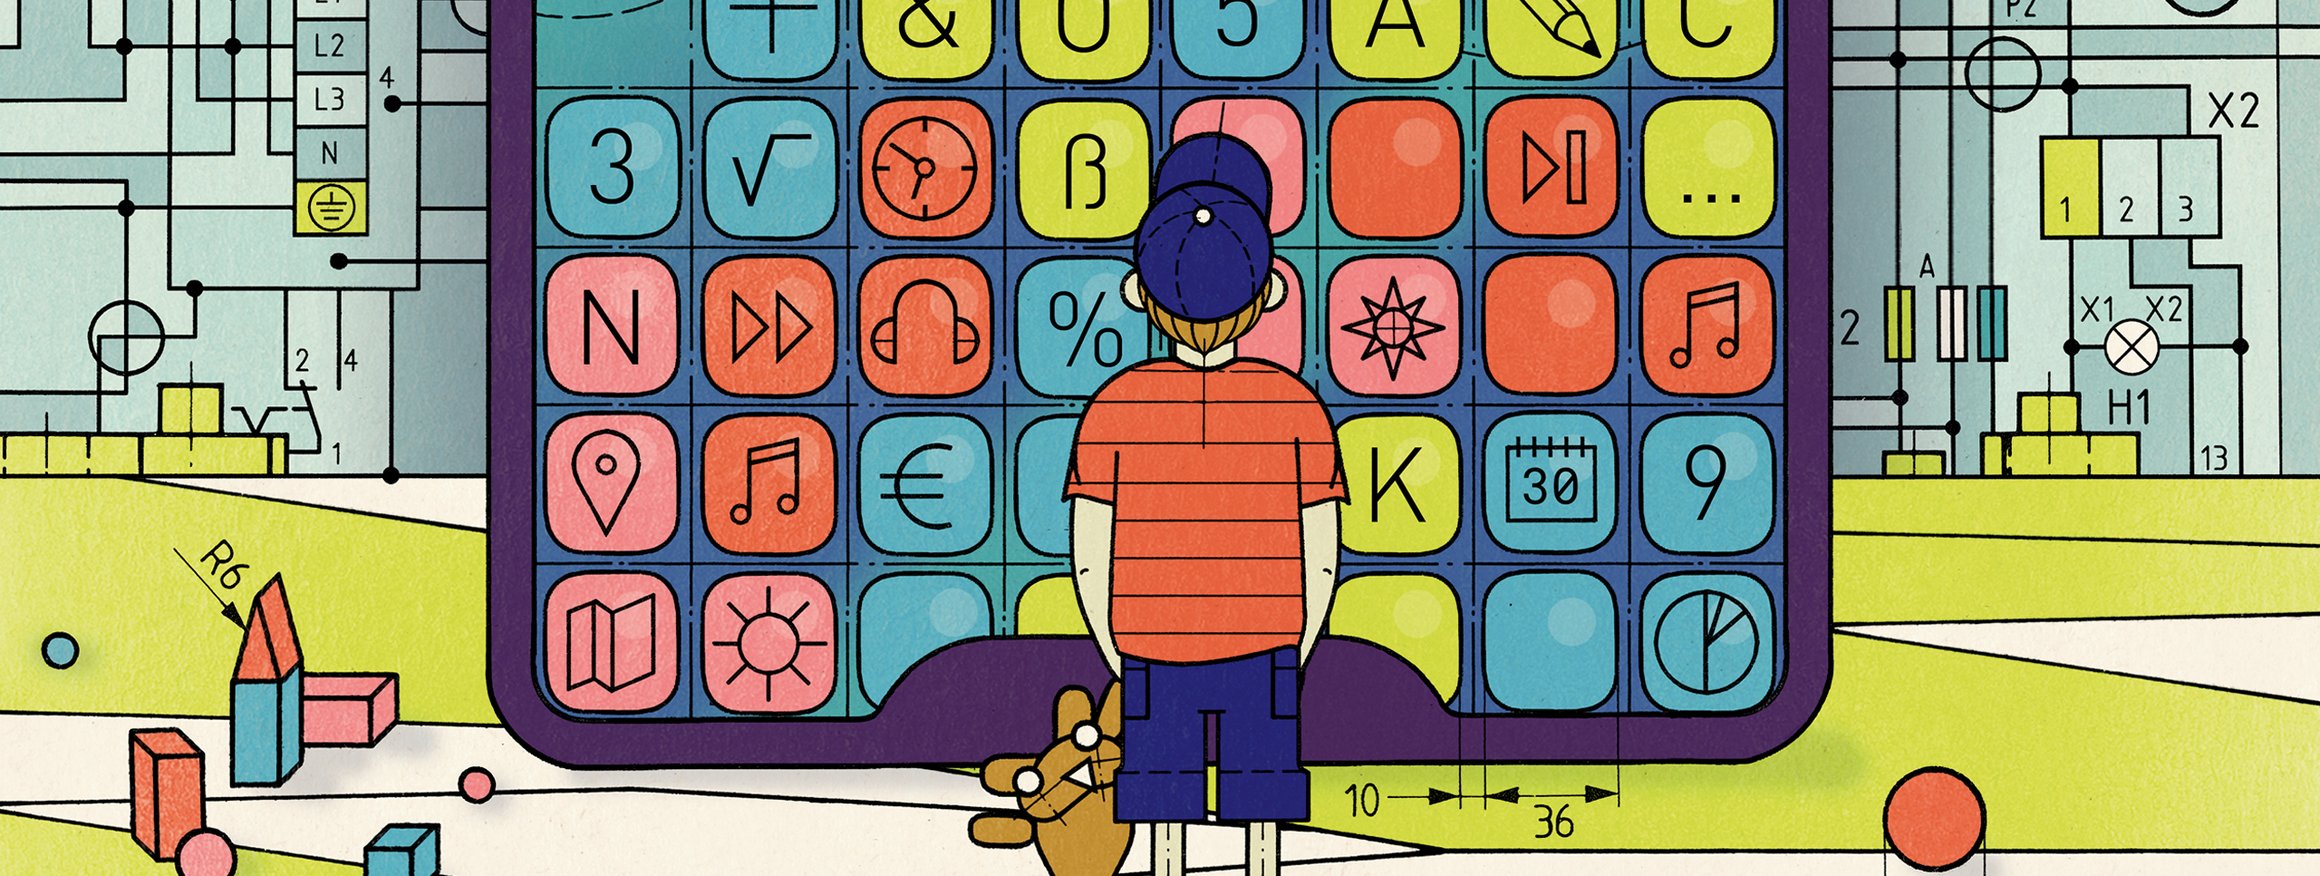 Die Illustration zeigt einen kleine Jungen mit Teddybär, der vor einem riesigen Smartphone steht auf der eine Lernapp ist